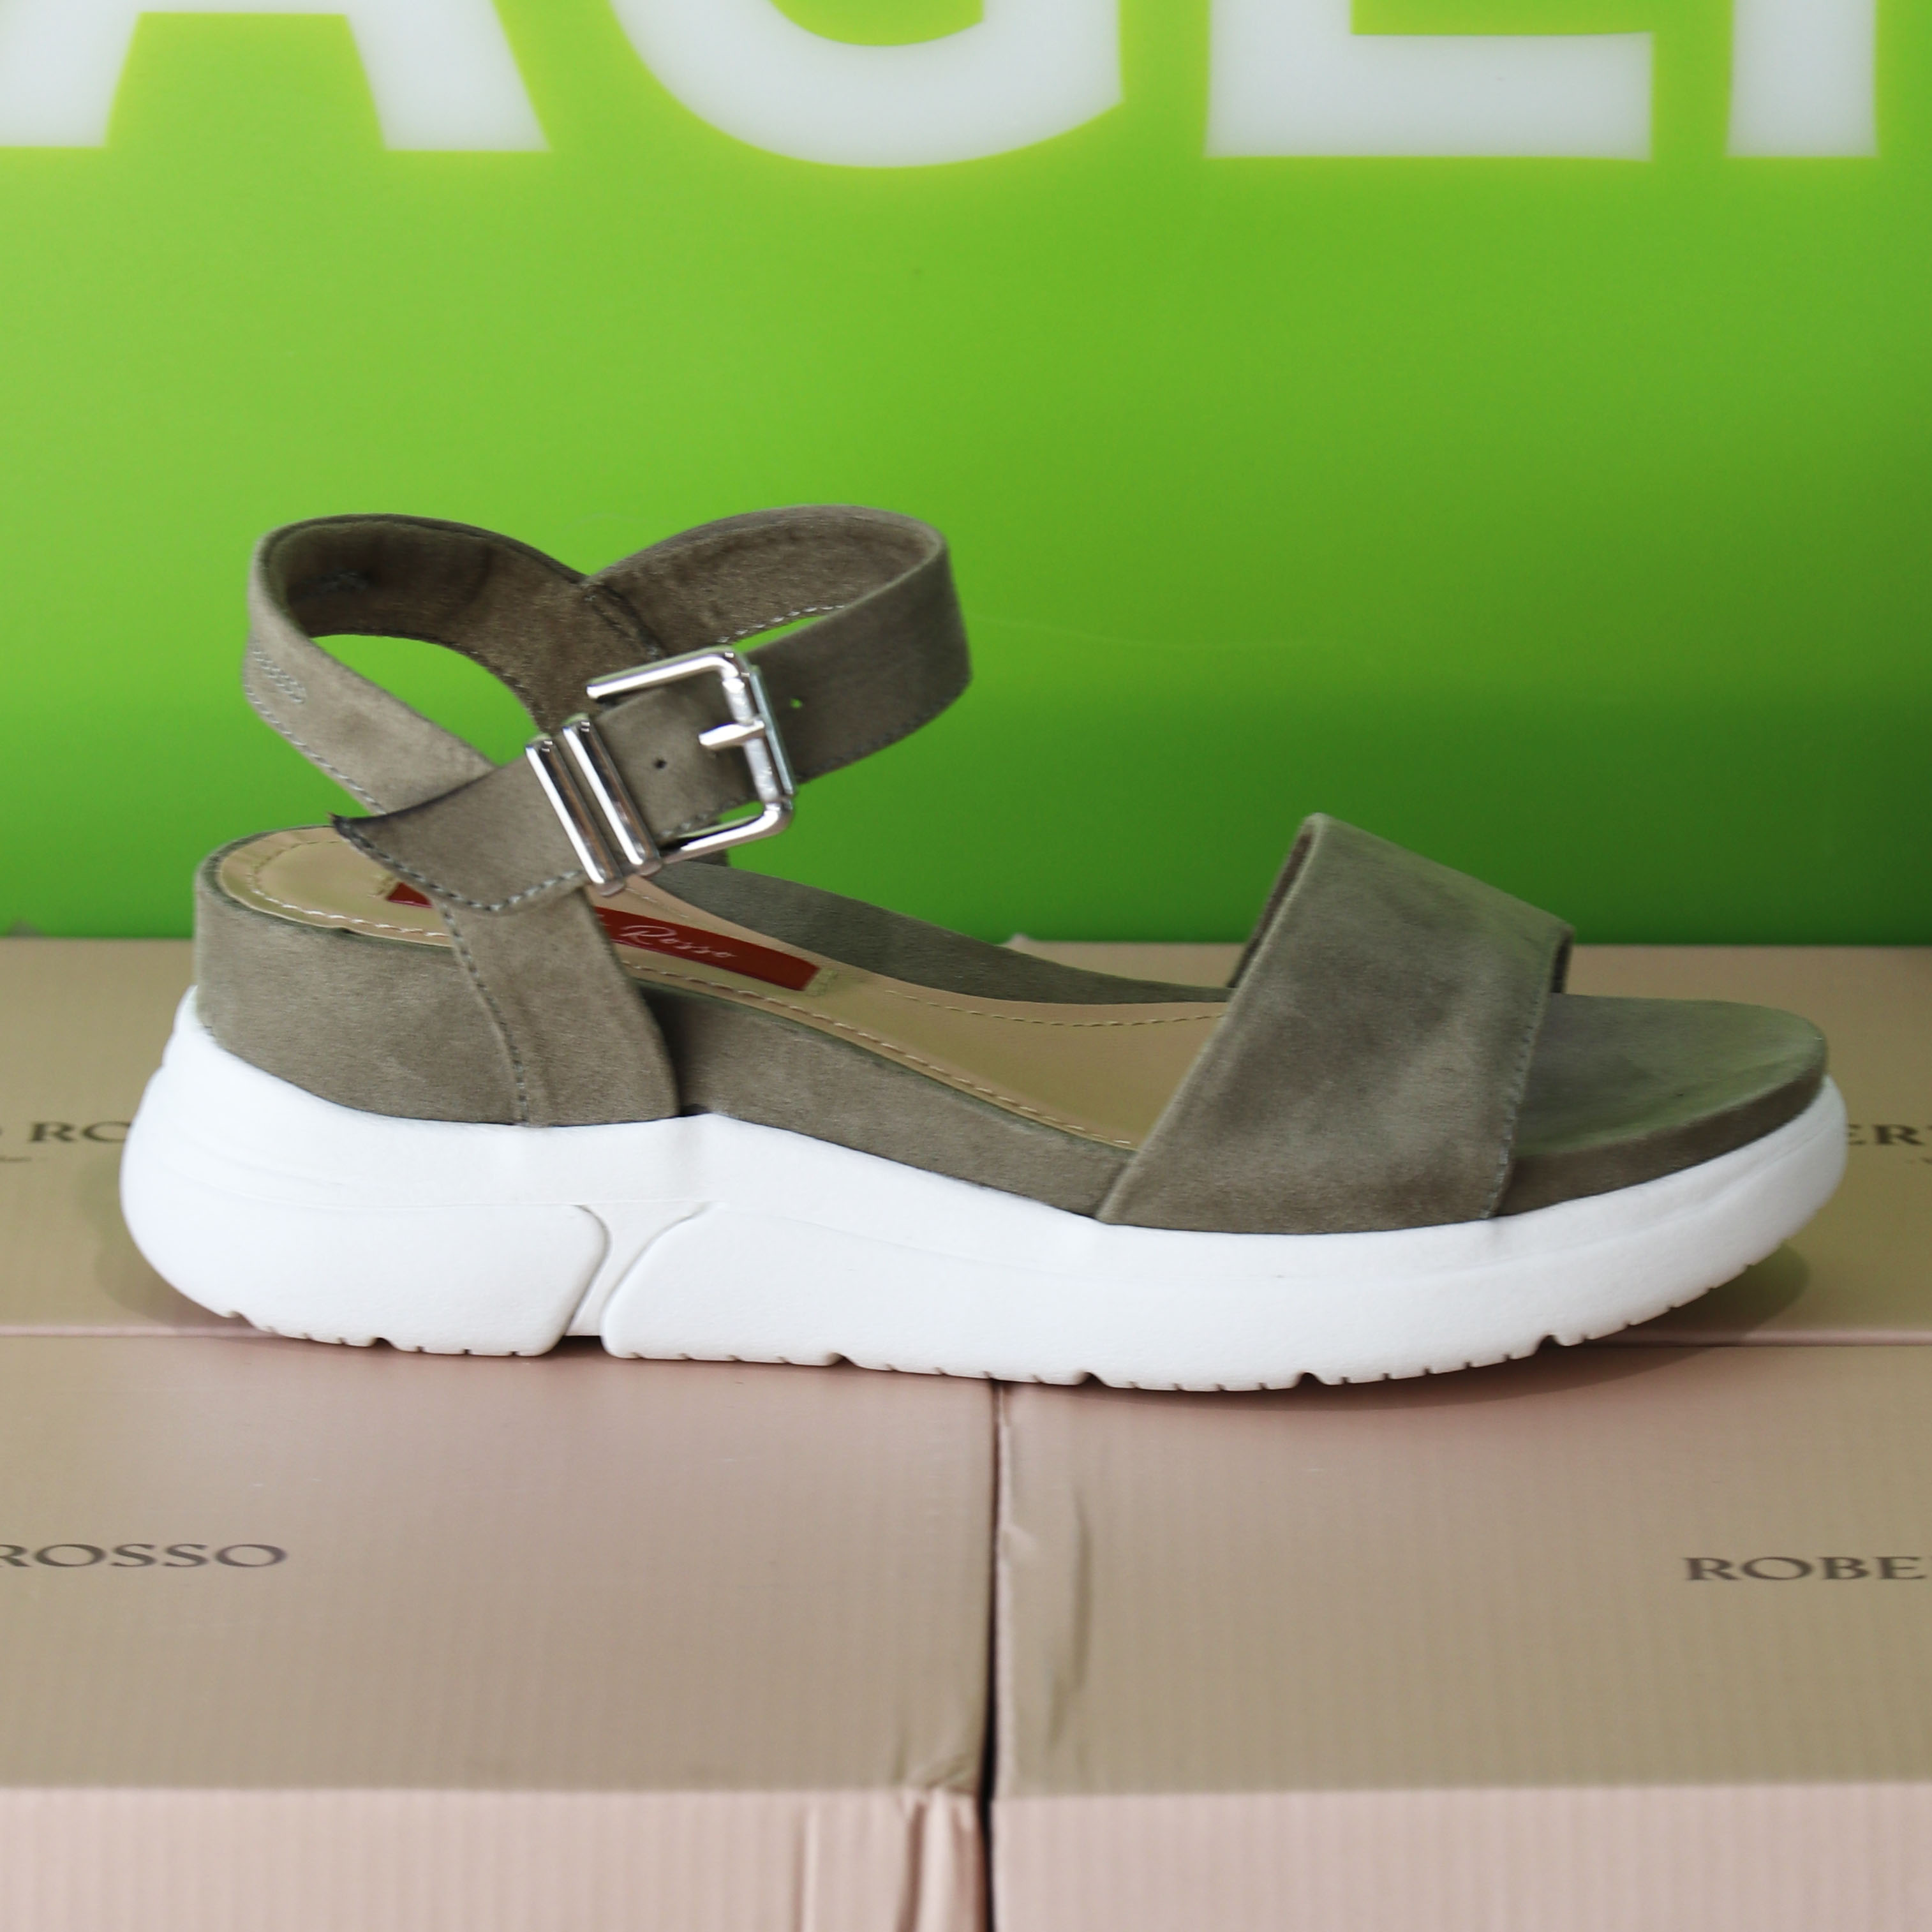 roberto rosso – akkira green sandal grønn sommer dame6